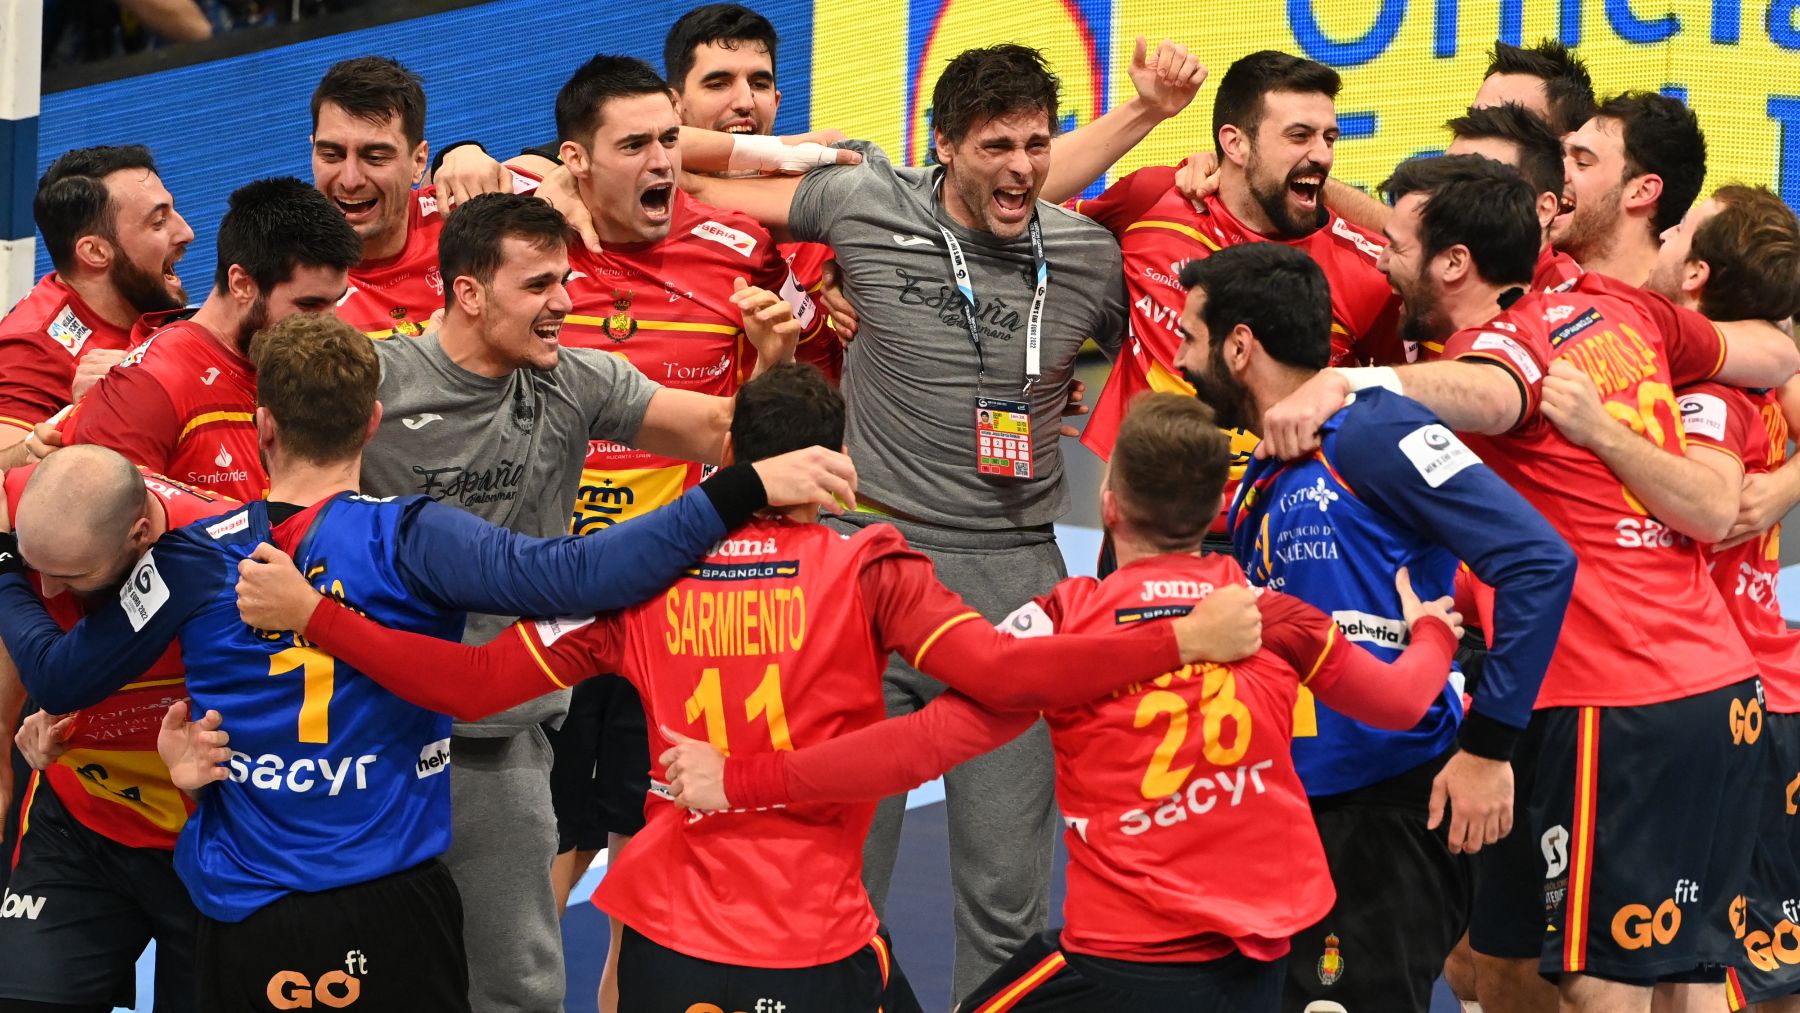 La selección de balonmano de España, los Hispanos, celebran su pase a la final del Europeo. (AFP)